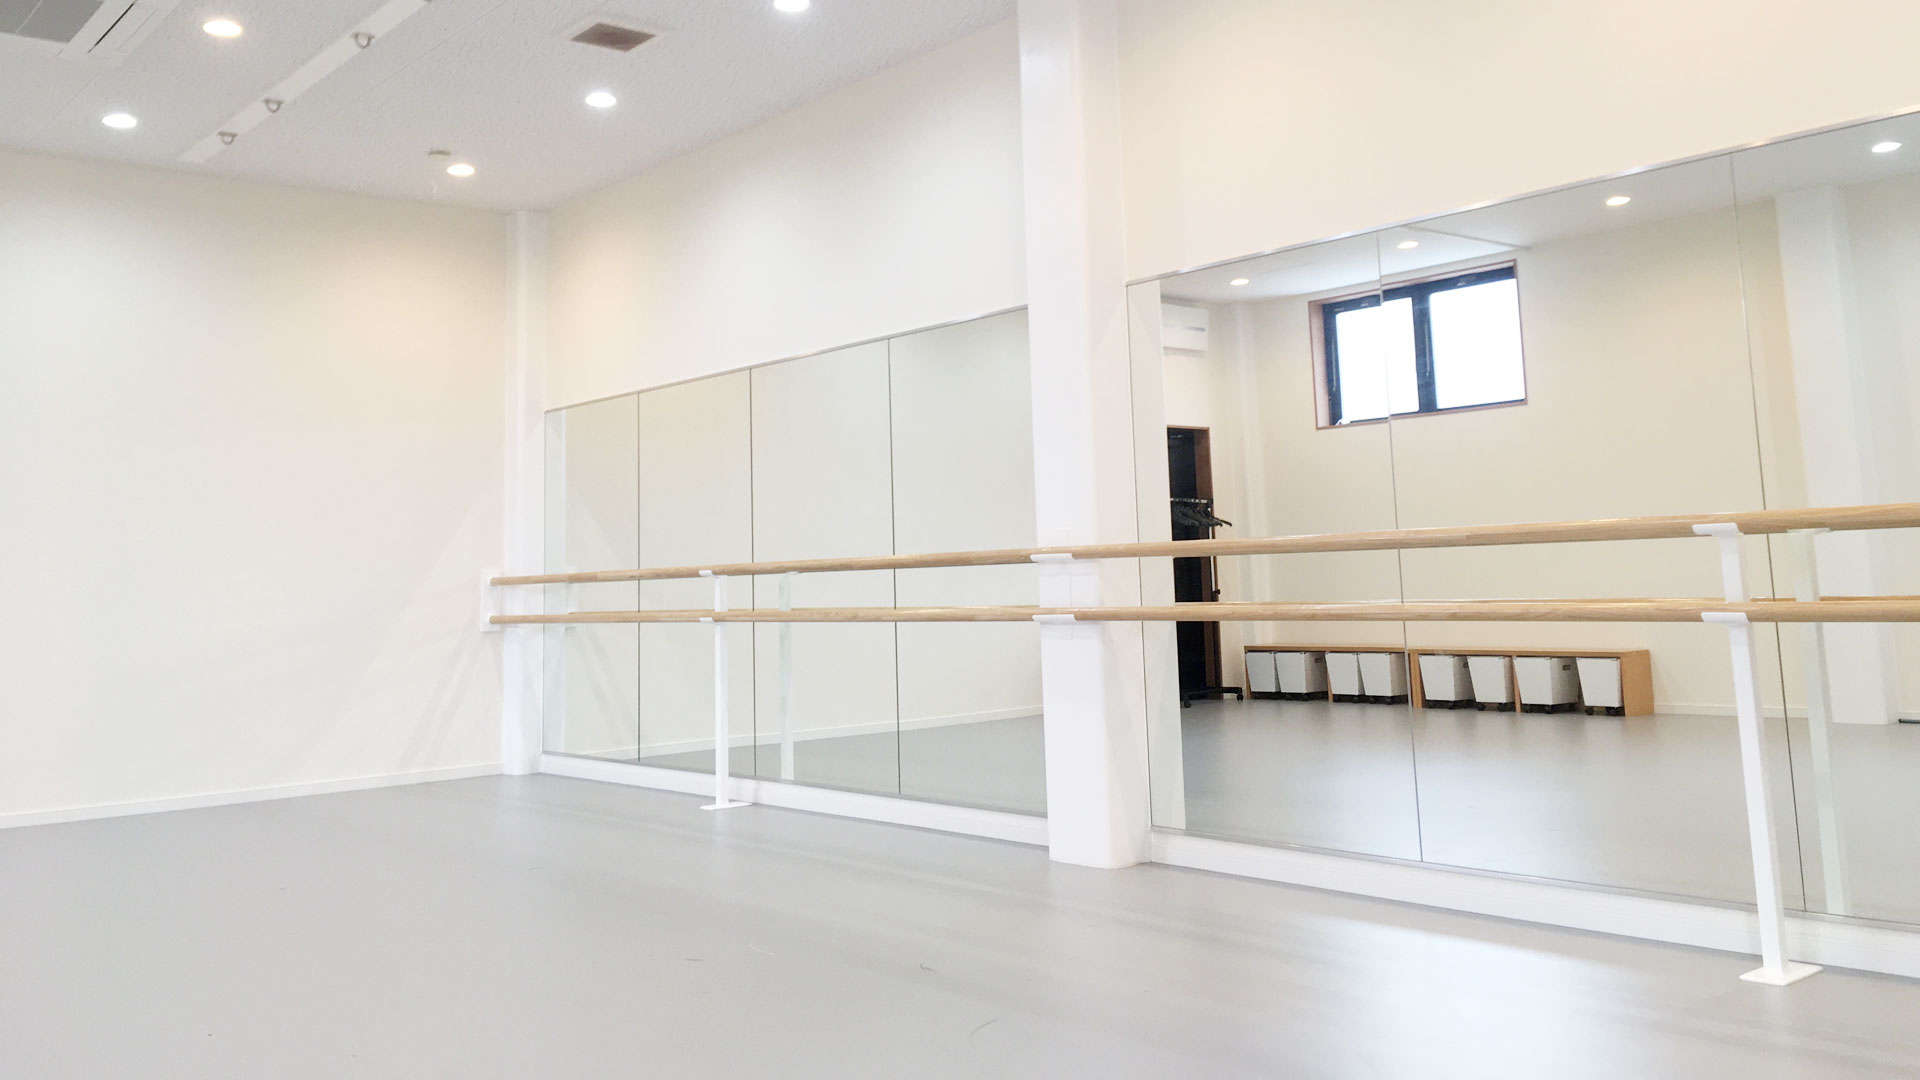 東京都西東京市でダンスレッスン、バレエ教室やヨガ教室の貸スタジオ、レンタルスペース、レンタルスタジオをお探しなら「スタジオアルファ」にお任せください。